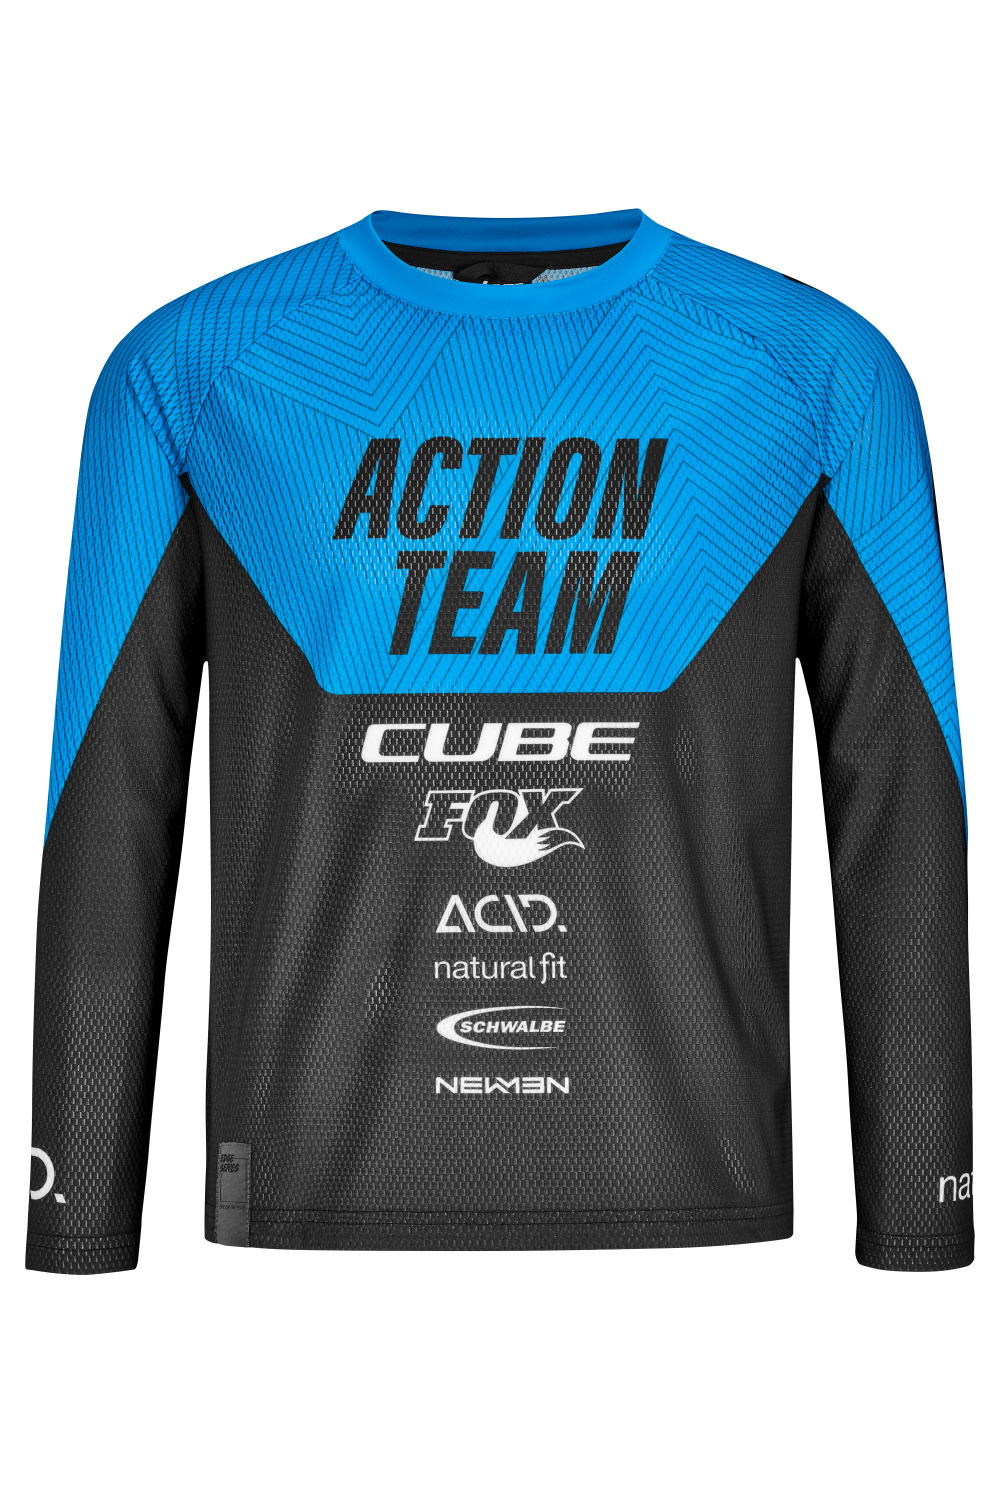 Cube Action Team Shirt Lange Mouw voor kinderen 2021